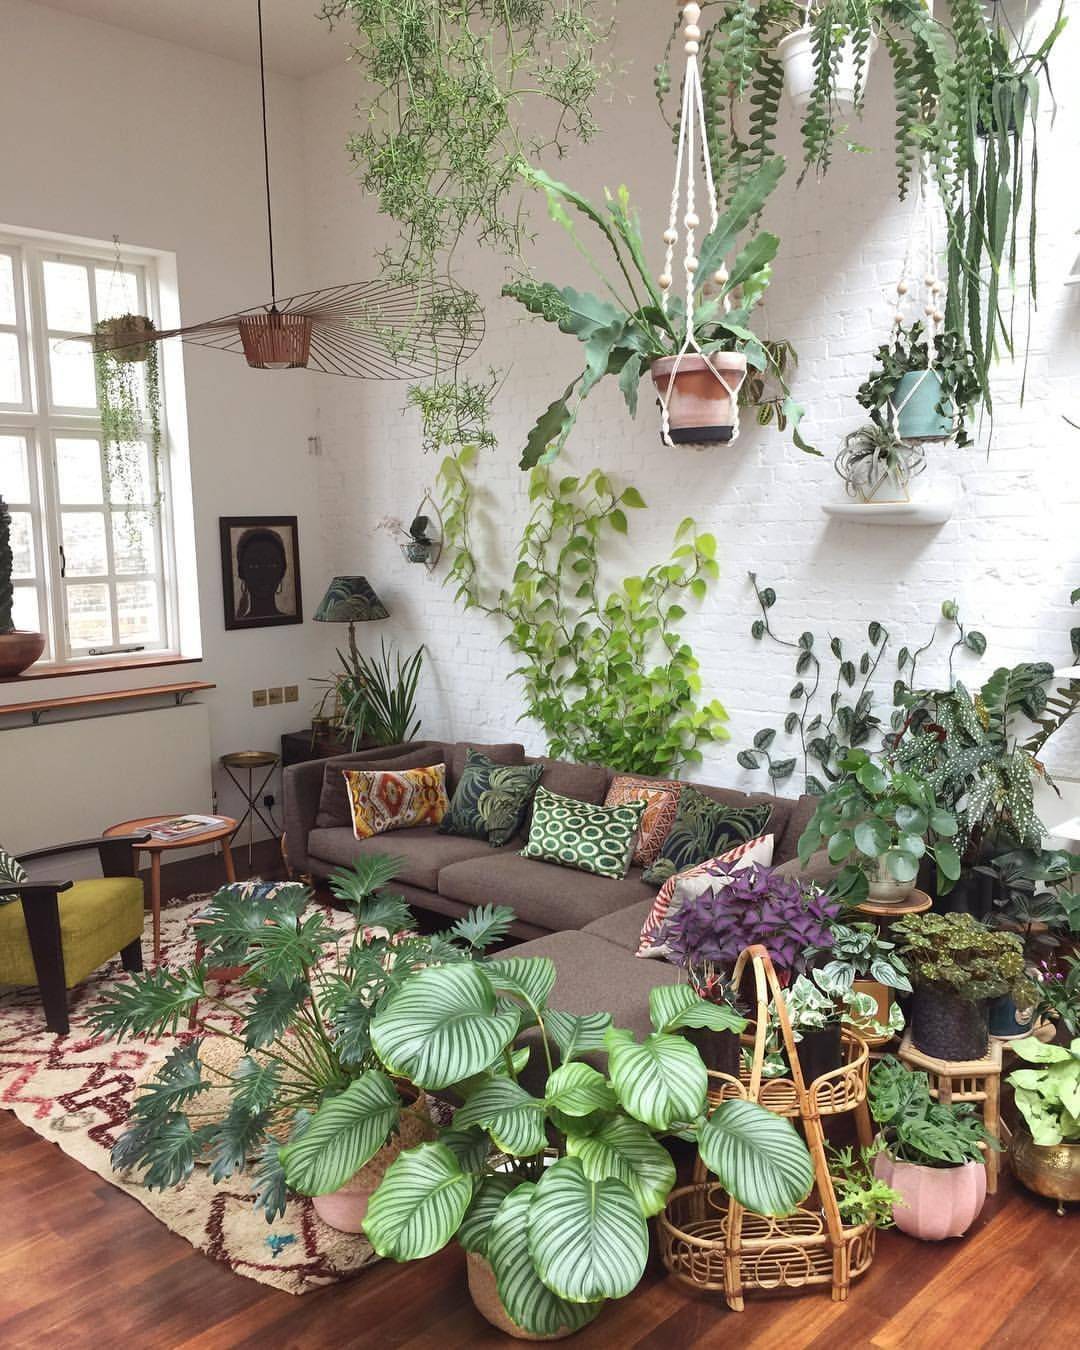 13 идей как обновить интерьер только с помощью растений - мебельный центр sbs